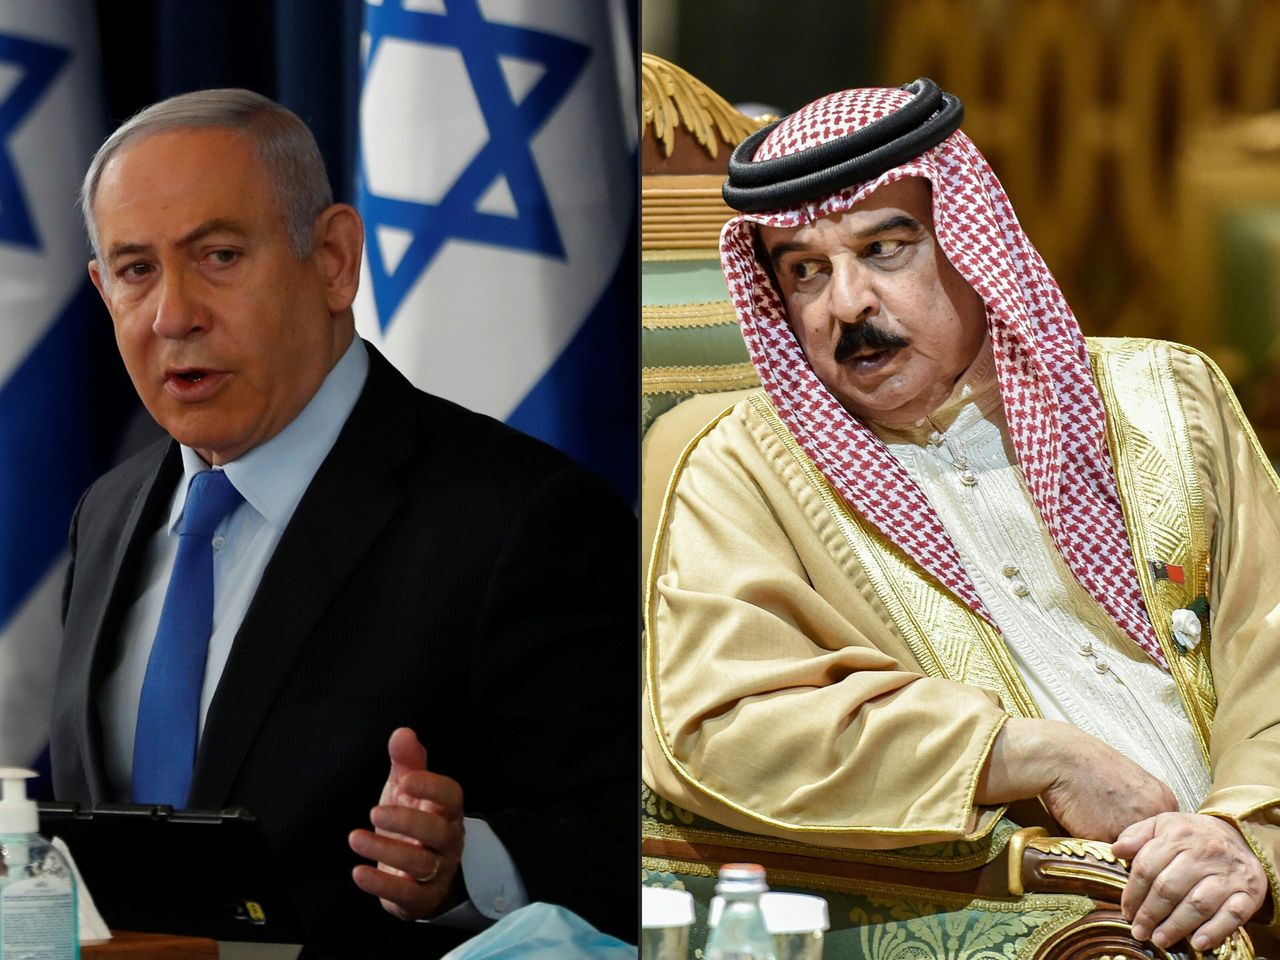 ( Πρωθυπουργός του Ισραήλ, Βενιαμίν Νετανιάχου, και ο Βασιλιάς του Μπαχρέιν, Χάμαντ μπιν Ίσα μπιν Σαλμάν αλ-Χαλίφα, επικοινώνησαν σήμερα και συμφώνησαν ότι το Ισραήλ και το Βασίλειο του Μπαχρέιν θα συνάψουν πλήρεις διπλωματικές σχέσεις.. (Photos by RONEN ZVULUN and Fayez Nureldine / various sources / AFP) (Photo by RONEN ZVULUN,FAYEZ NURELDINE/AFP via Getty Images)